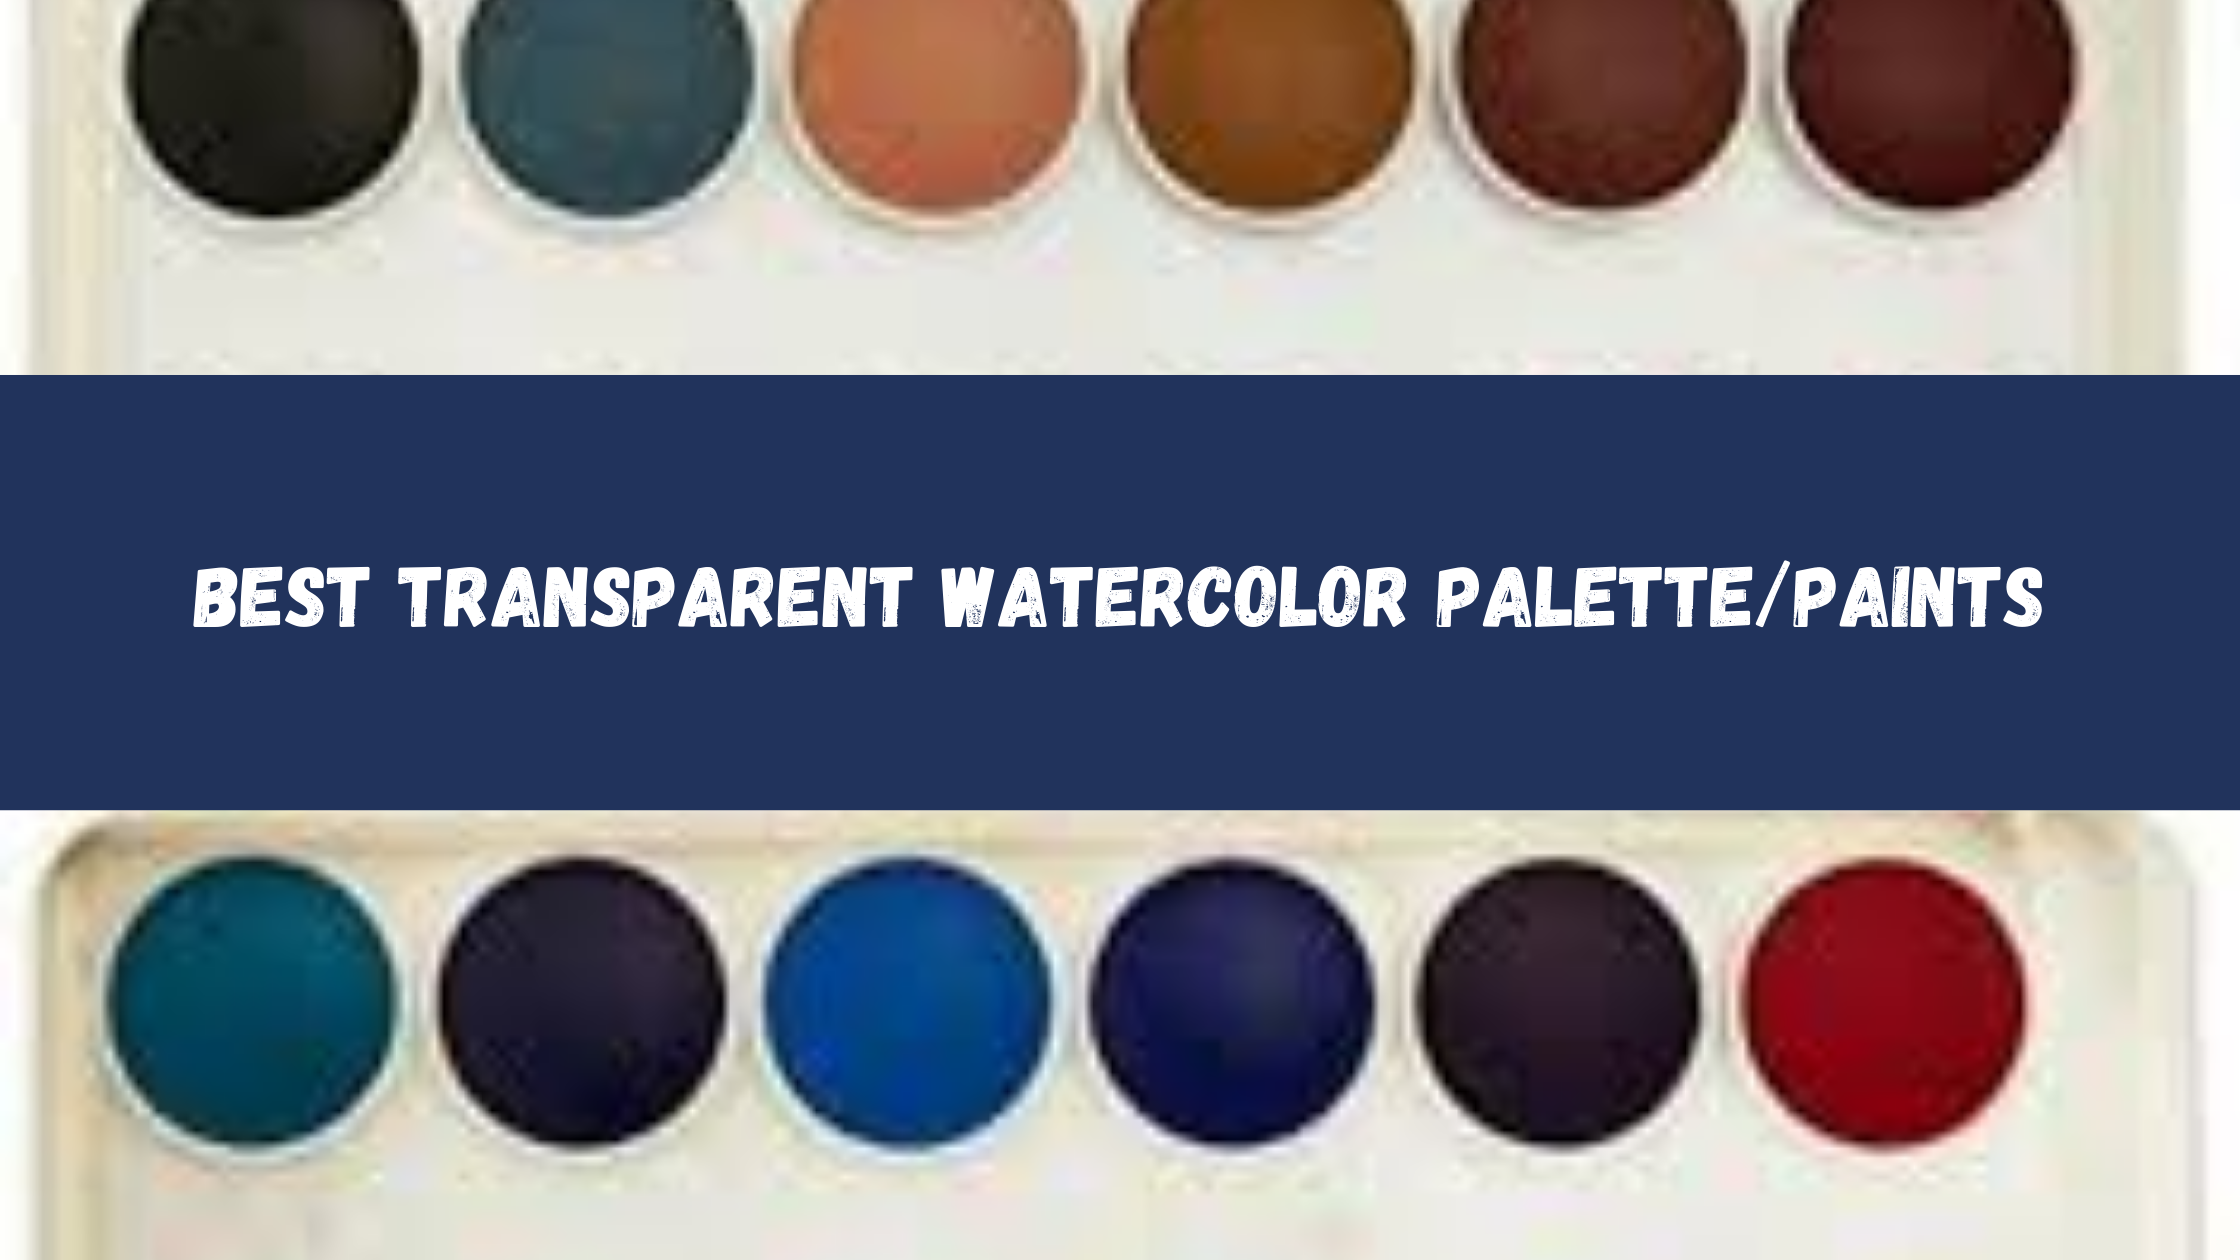 Best Transparent Watercolor Palette/Paints